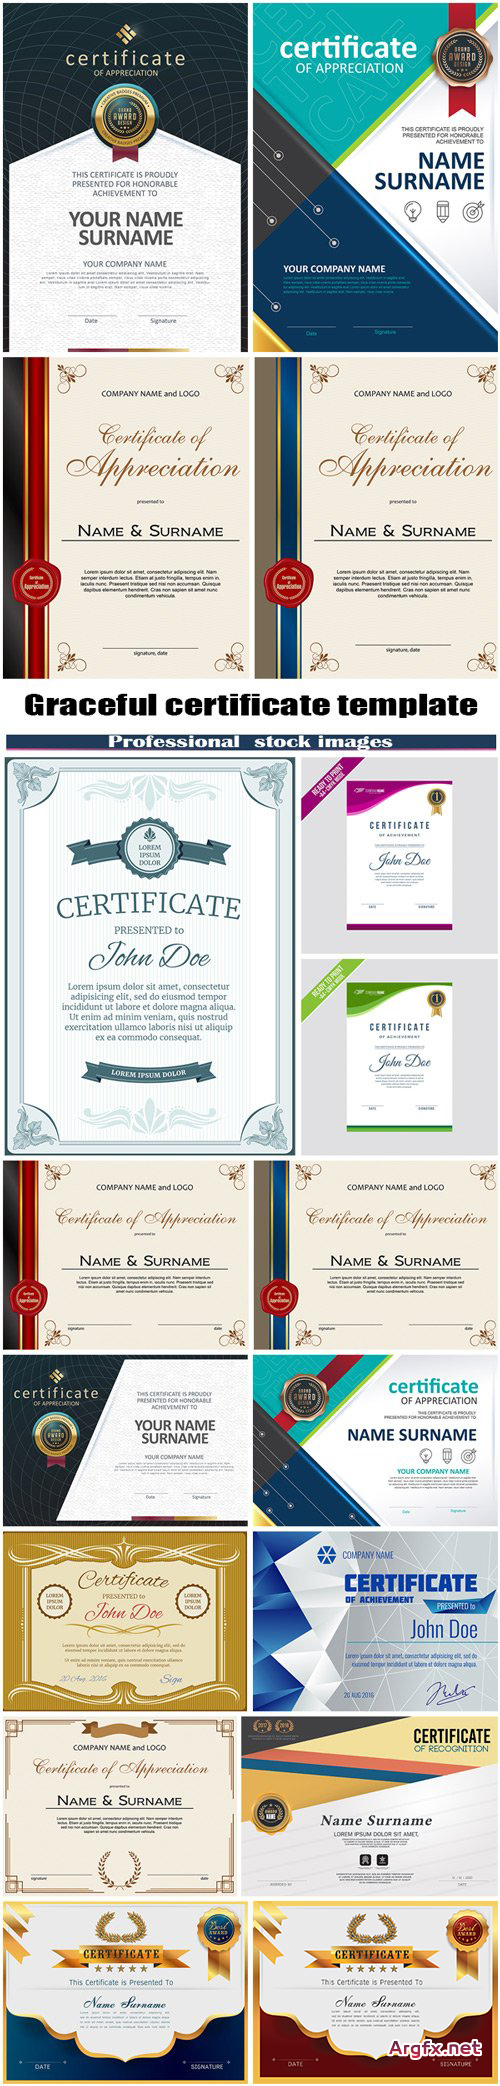  Graceful certificate template